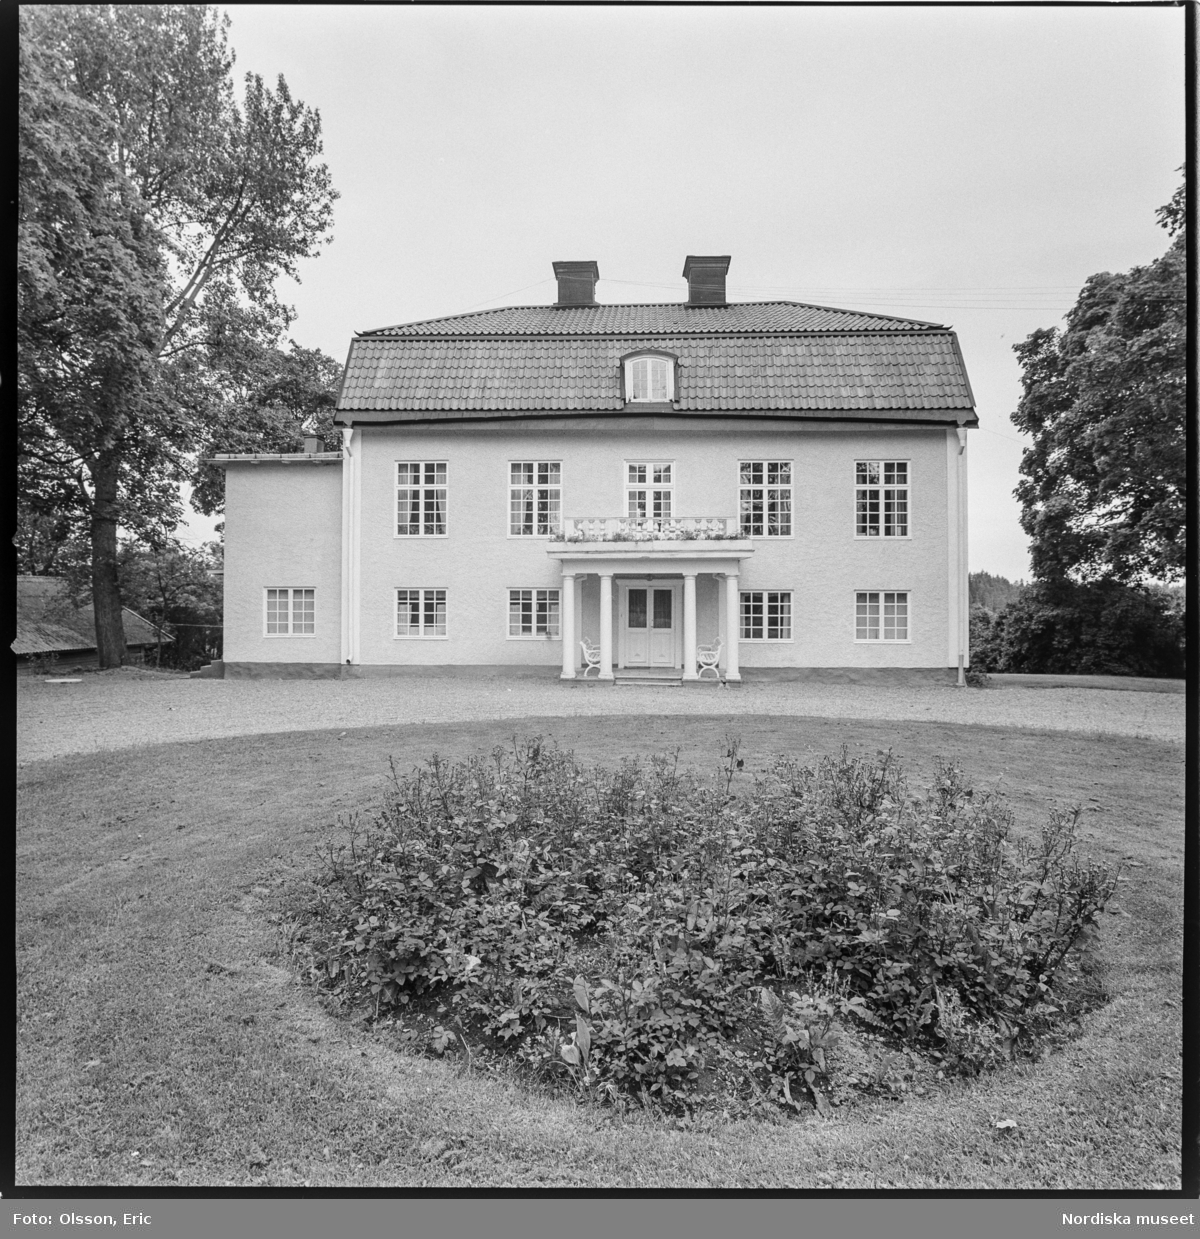 Exteriör av Berga herrgård vid Berga slott, Västerhaninge socken, Södermanland.